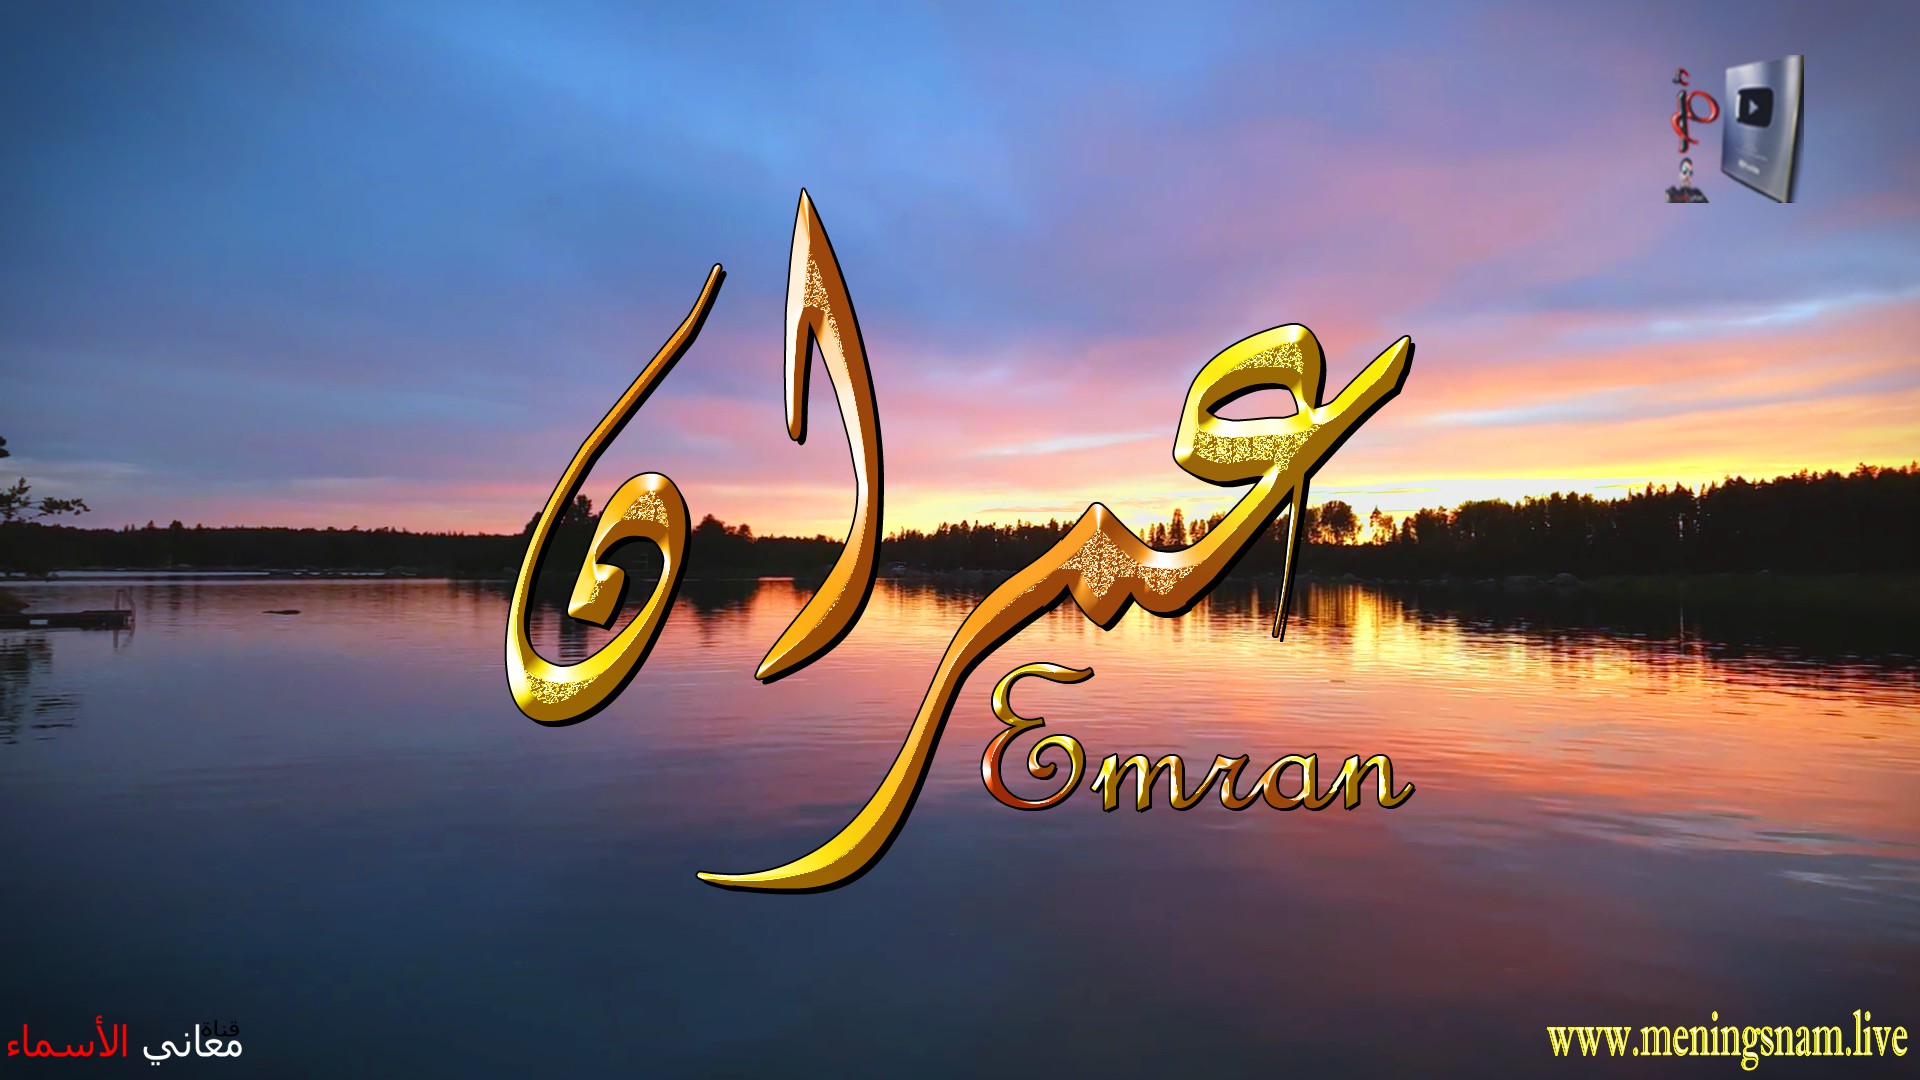 معنى اسم, عمران, وصفات, حامل, هذا الاسم, Emran,